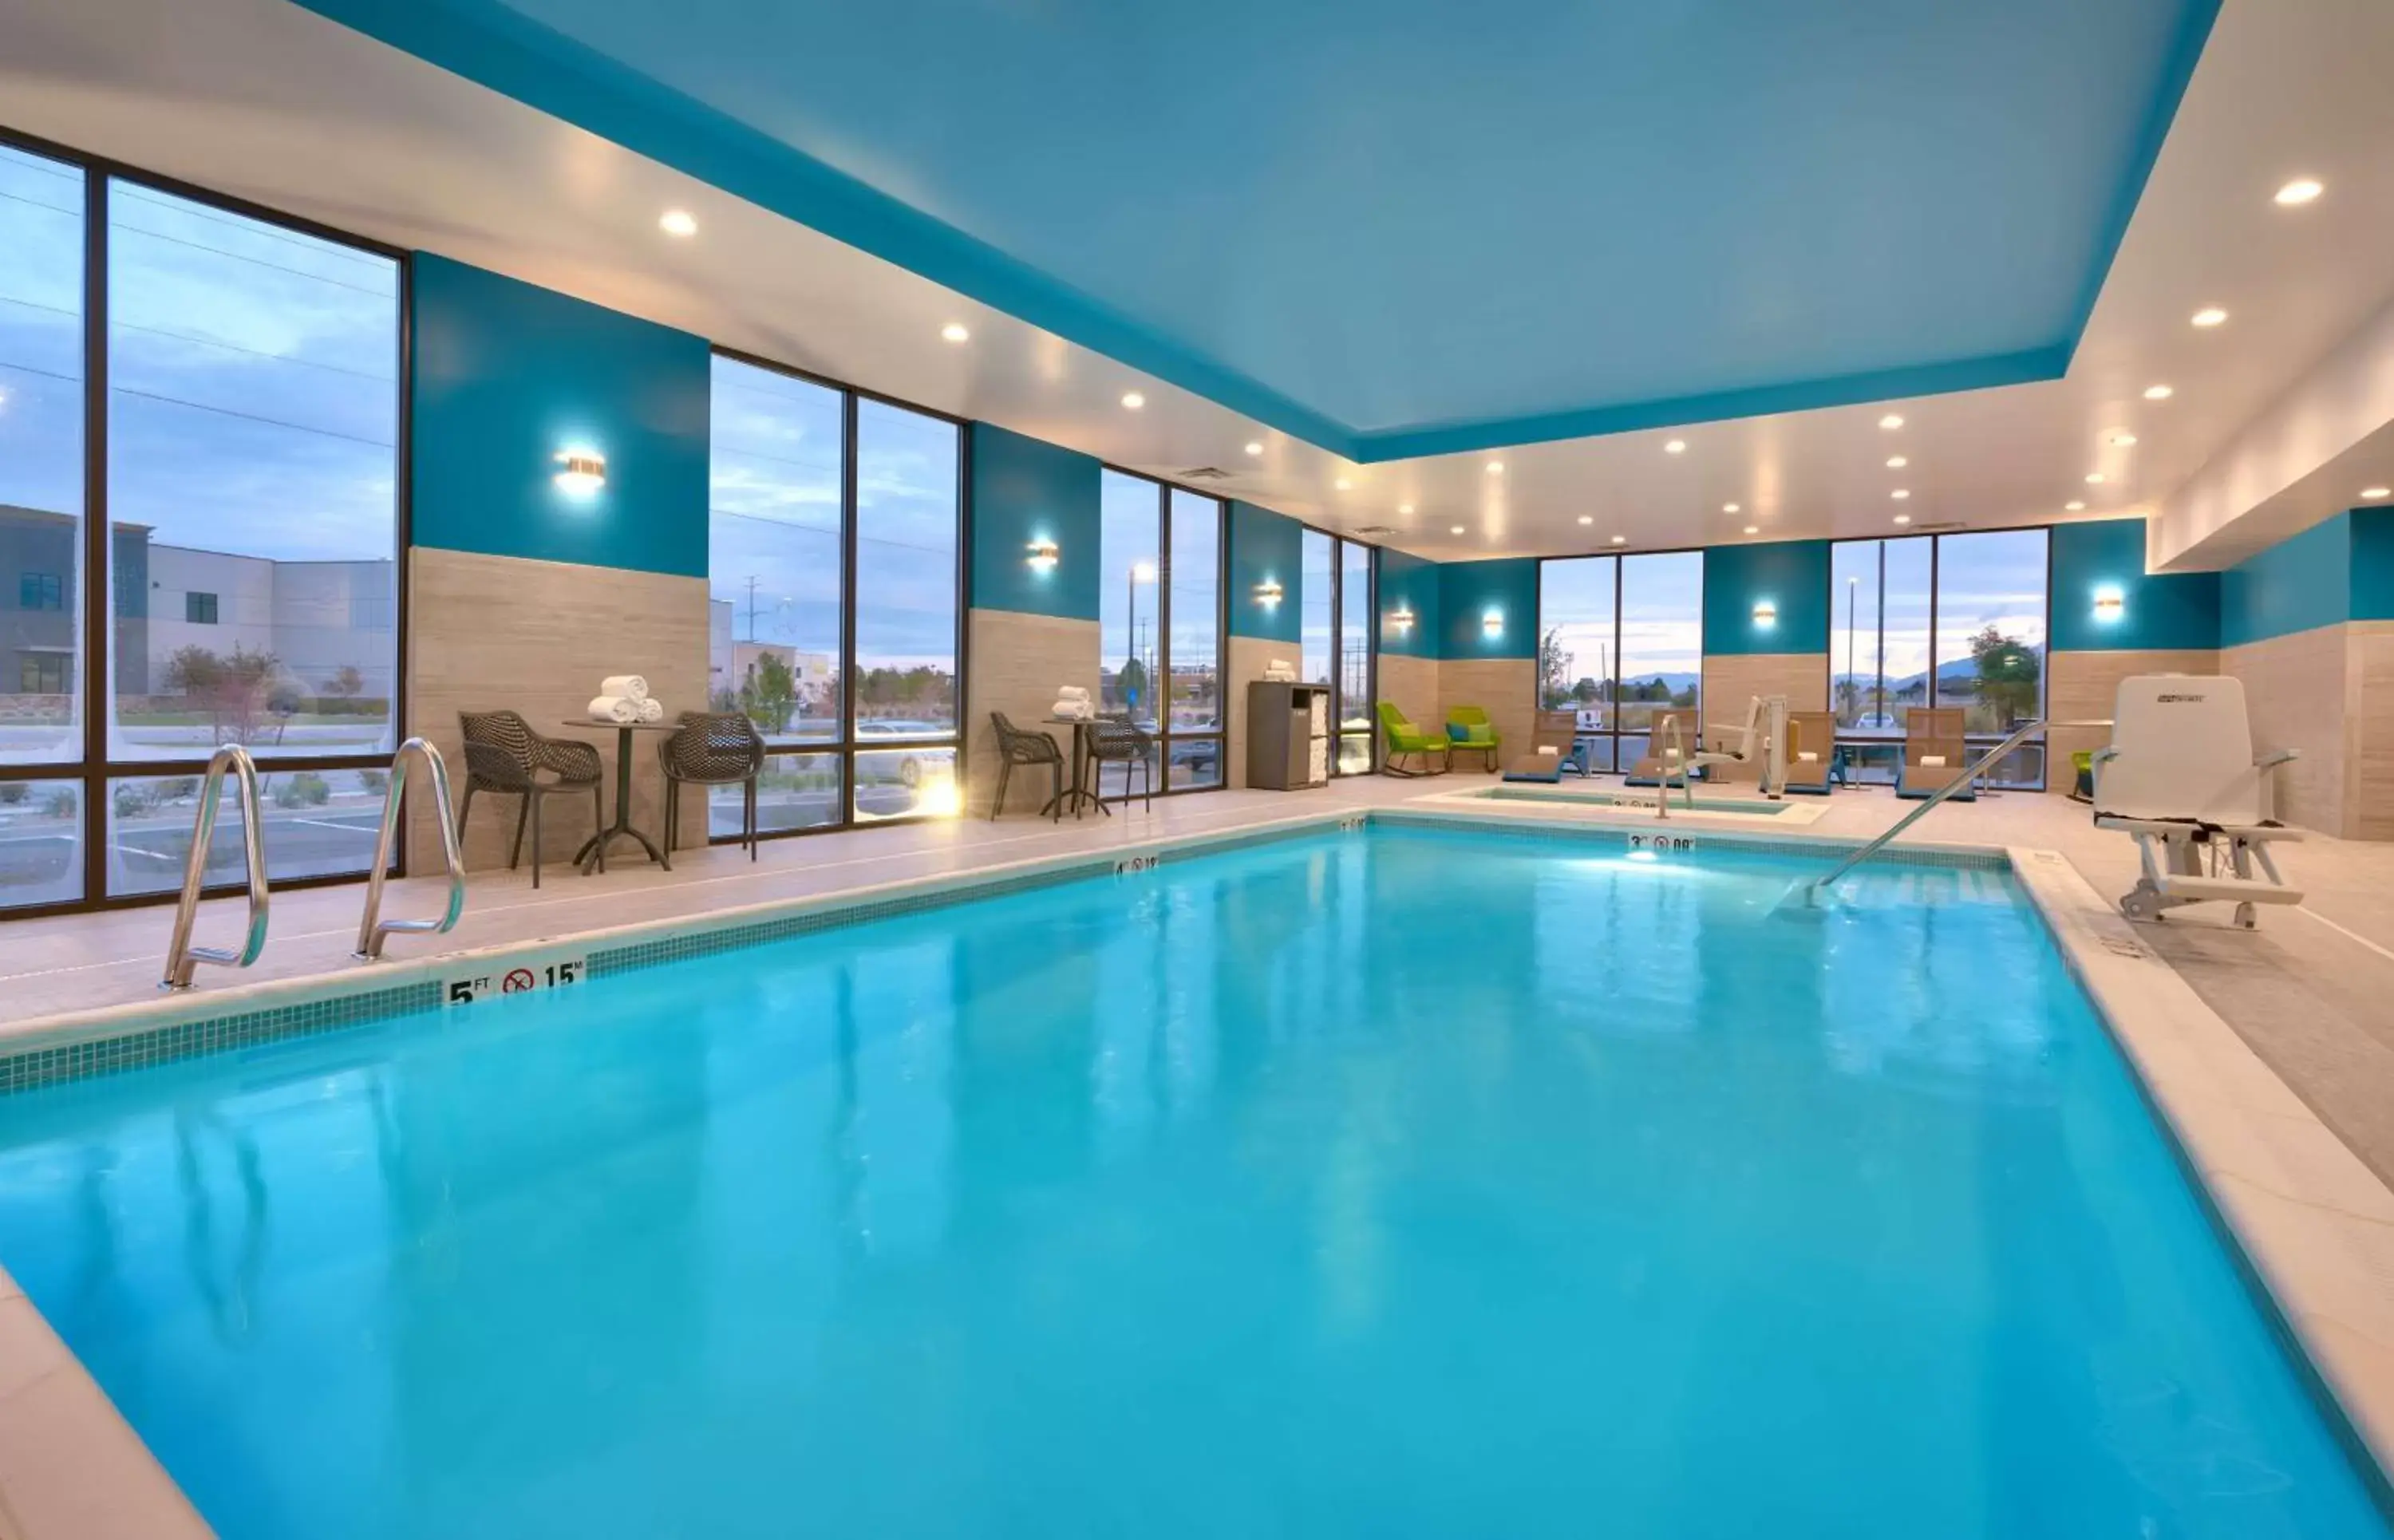 Pool view, Swimming Pool in Hampton Inn Draper Salt Lake City, Ut